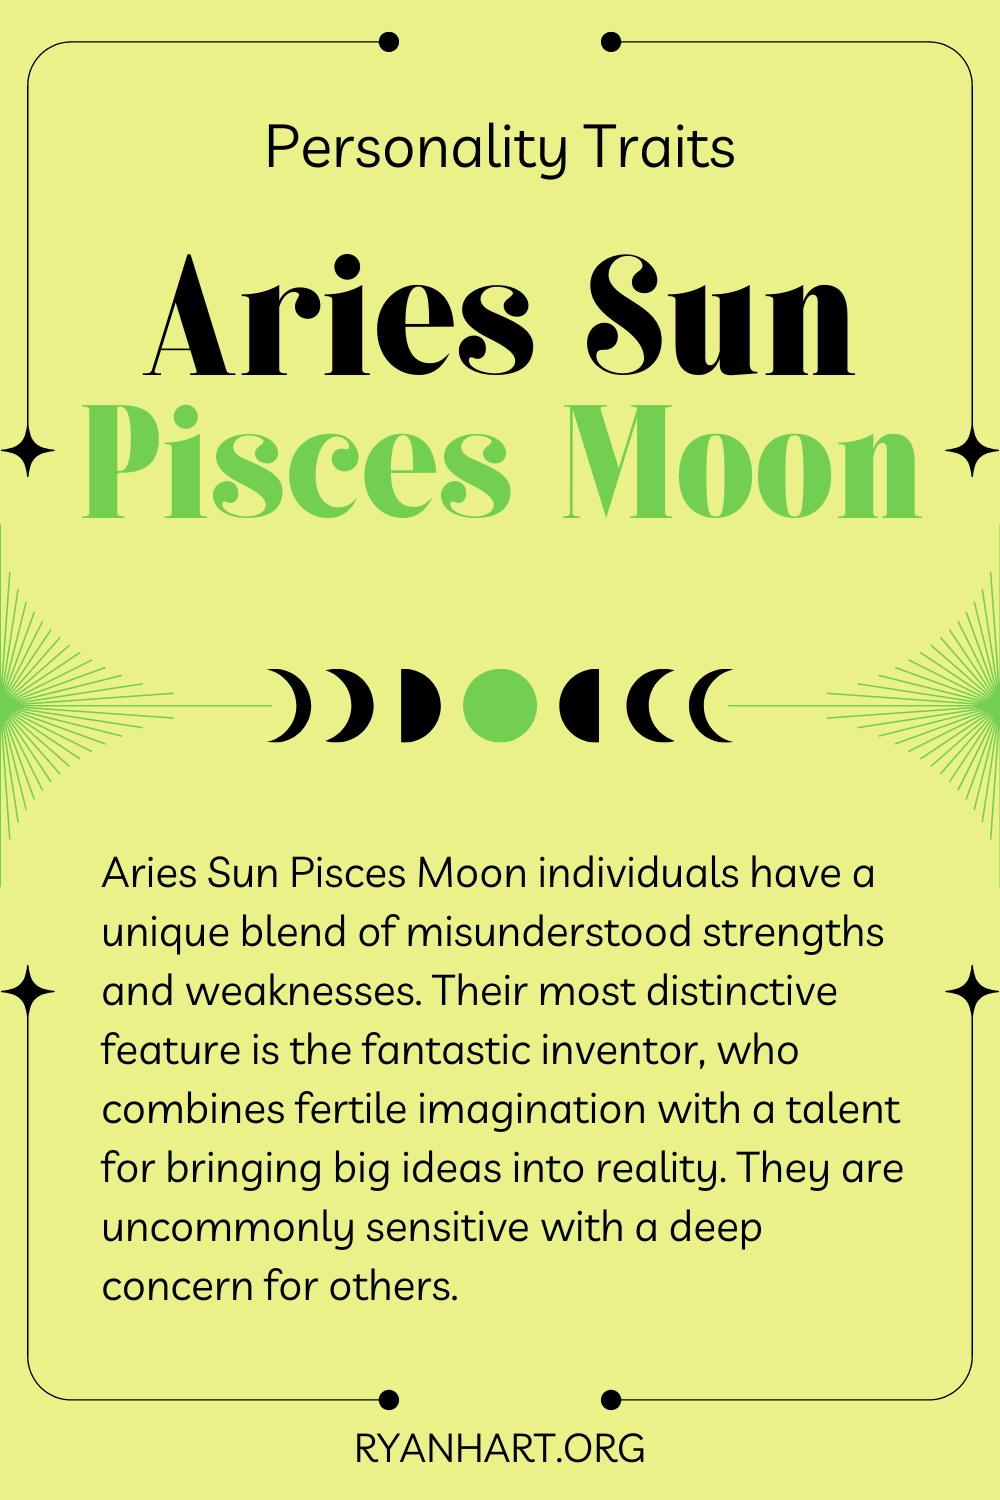 Aries Sun Pisces Moon Description